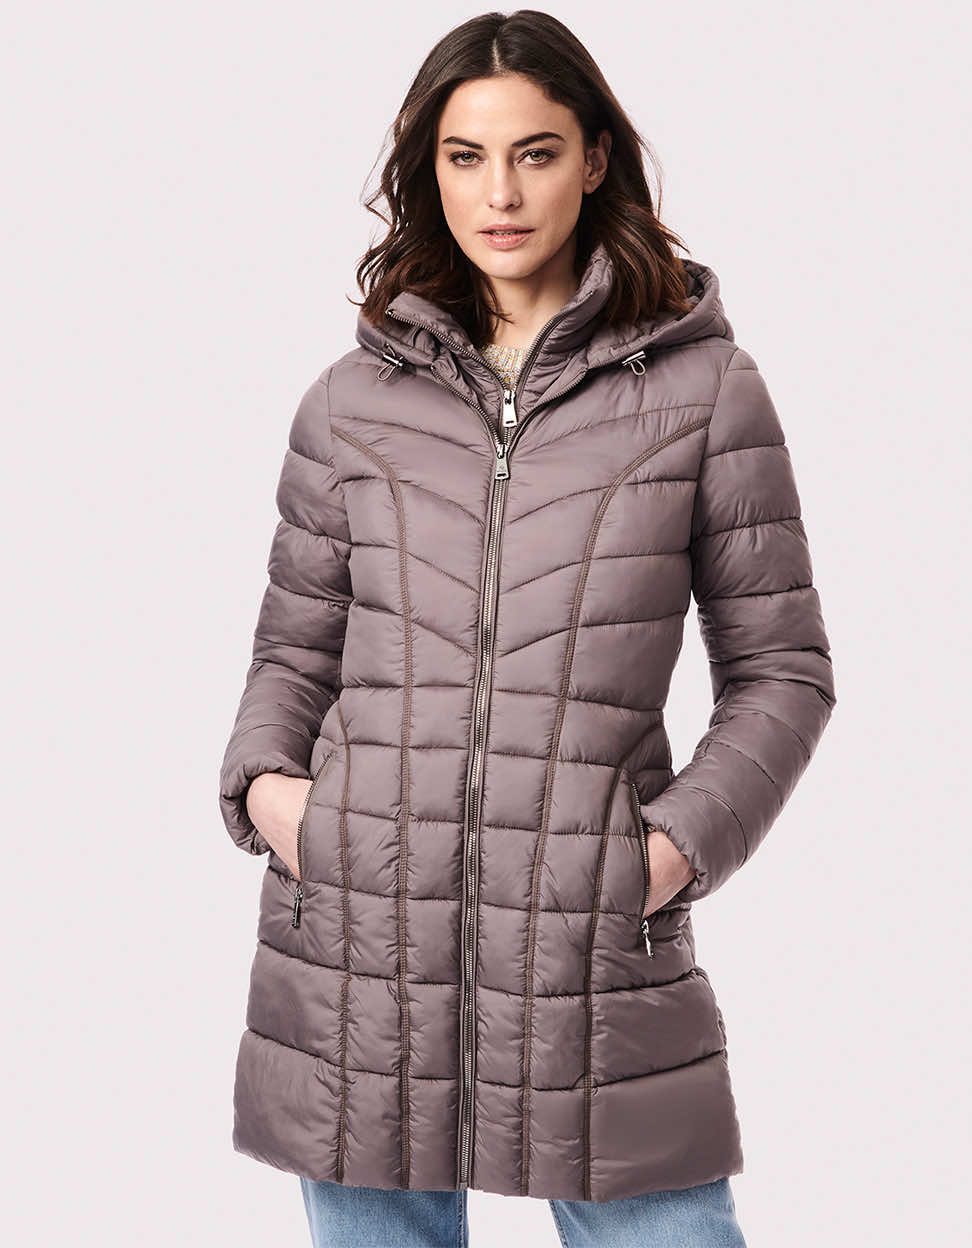 Fashion Coat for Women - 3-in-1 Puffer Coat - Taupe - Bernardo